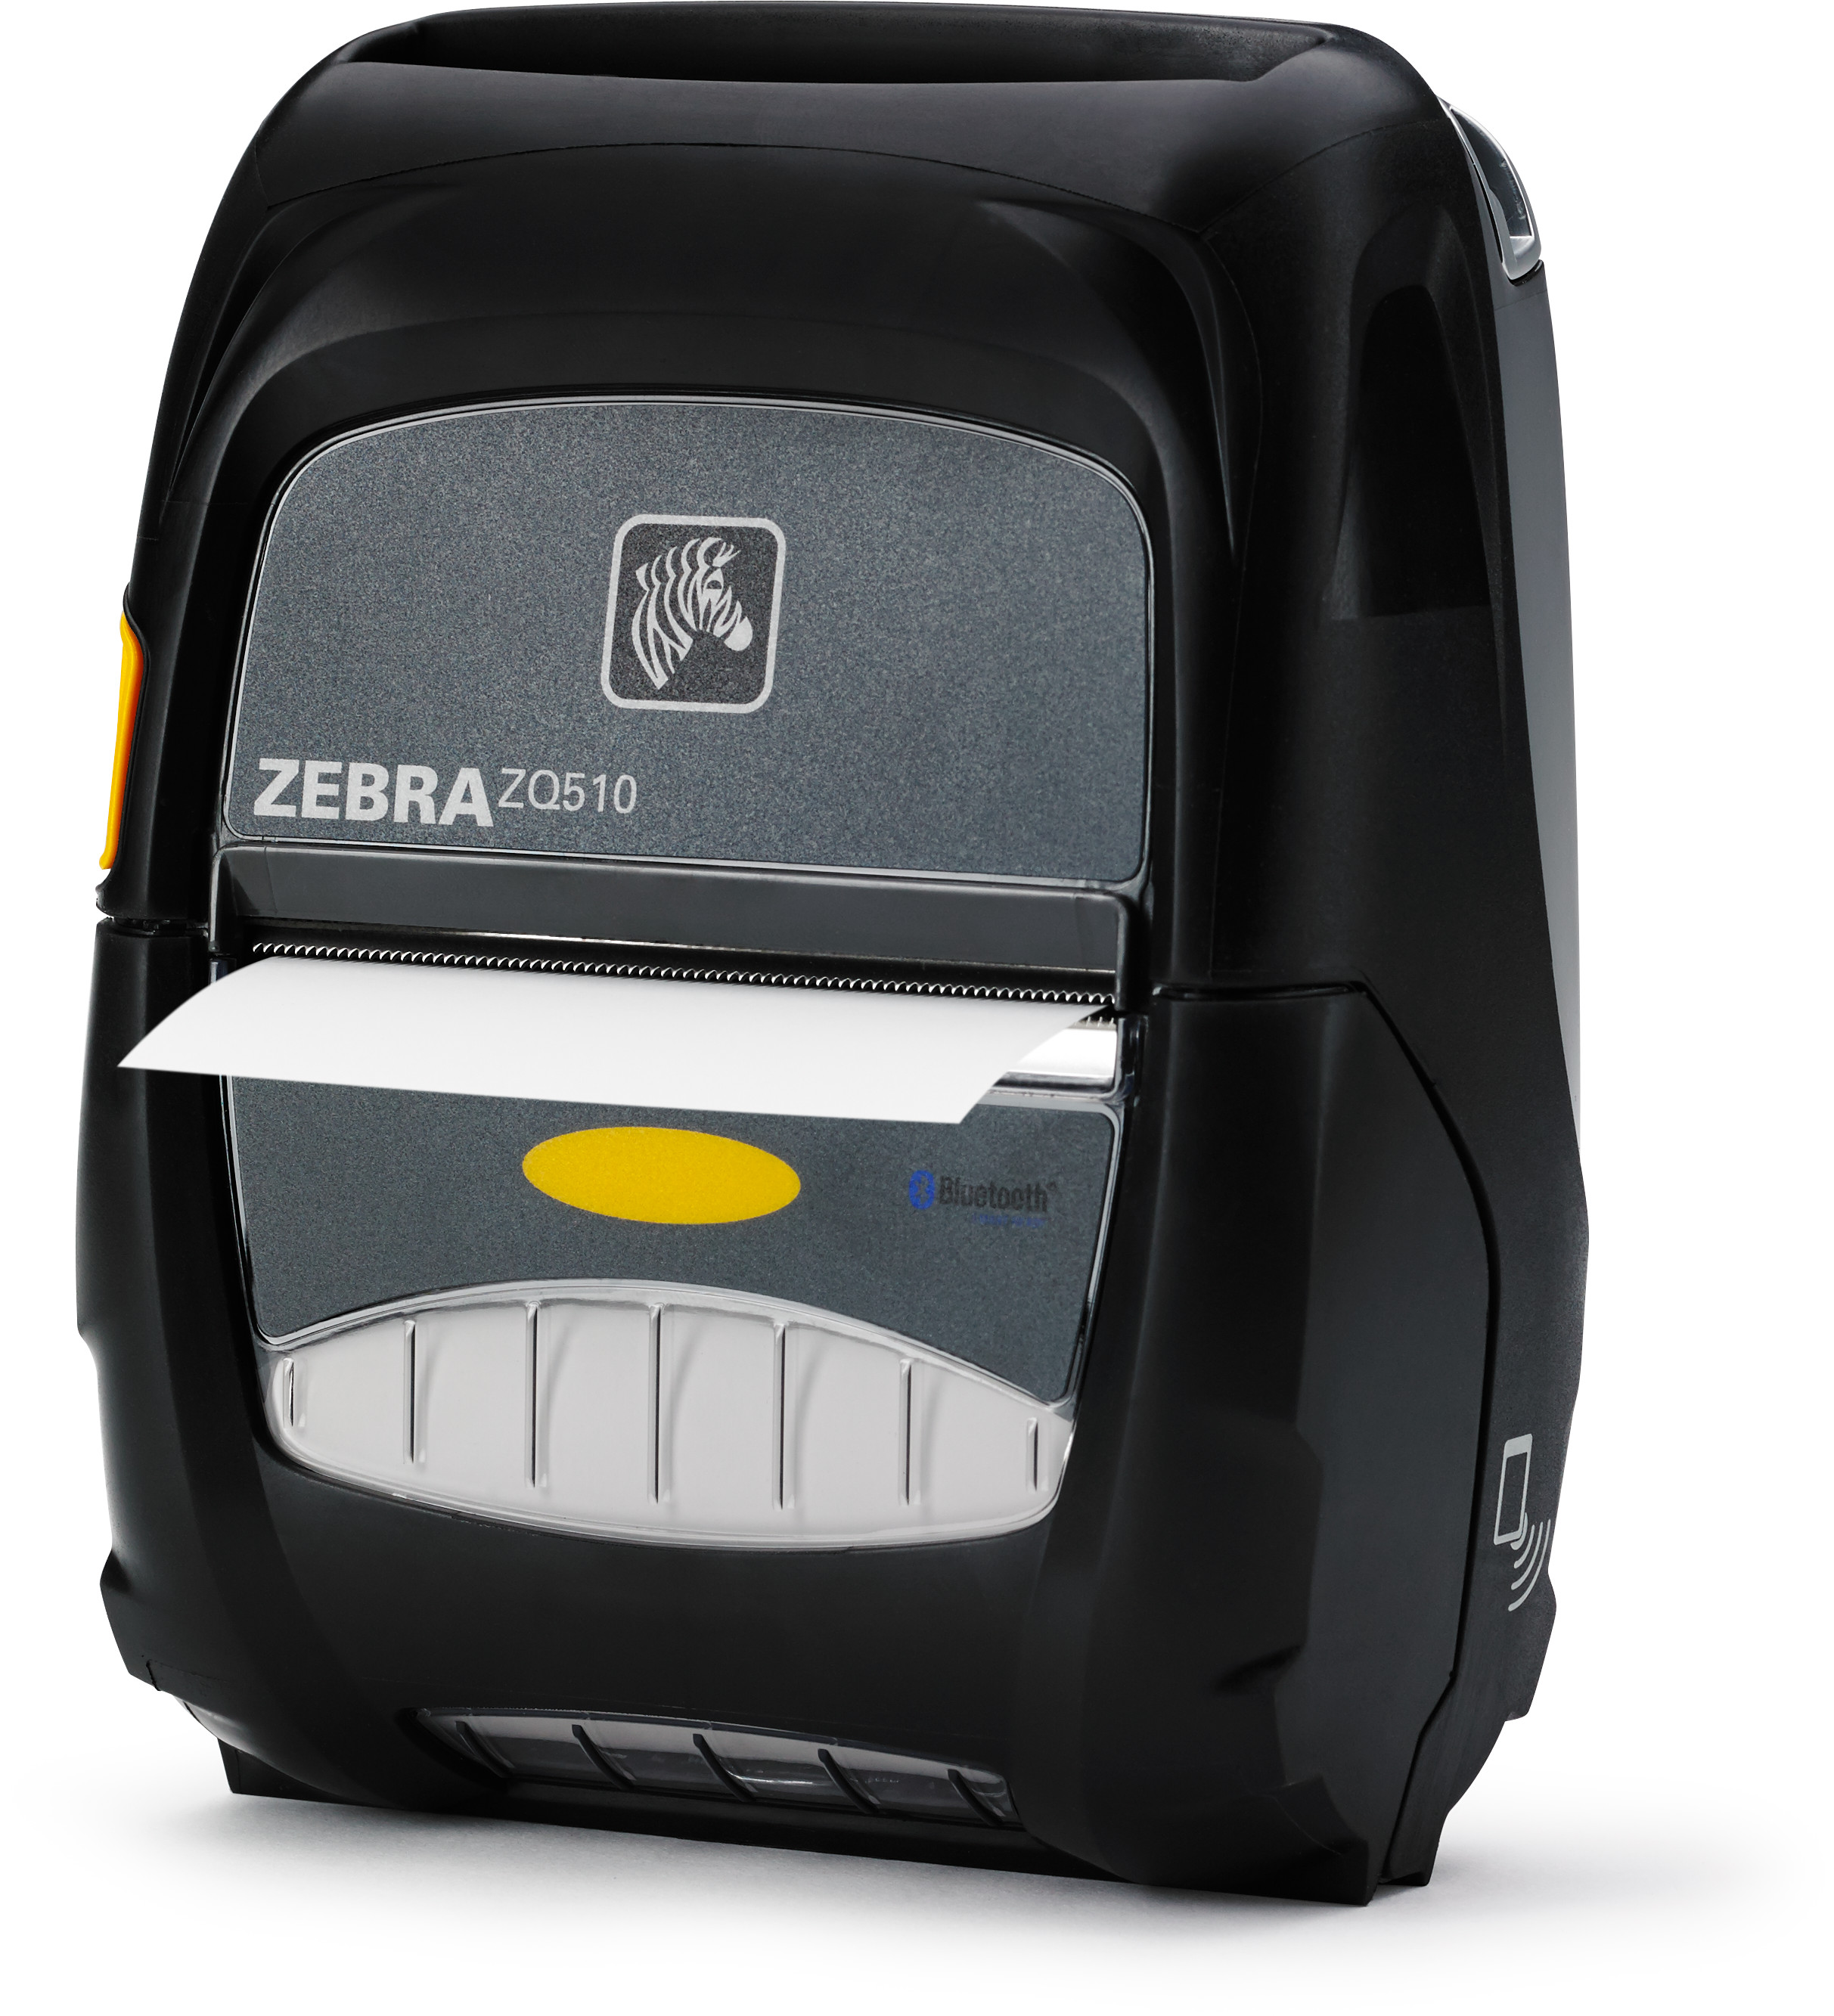 Zq510 Stampante Portatile Zebra Teleserviziit 1503